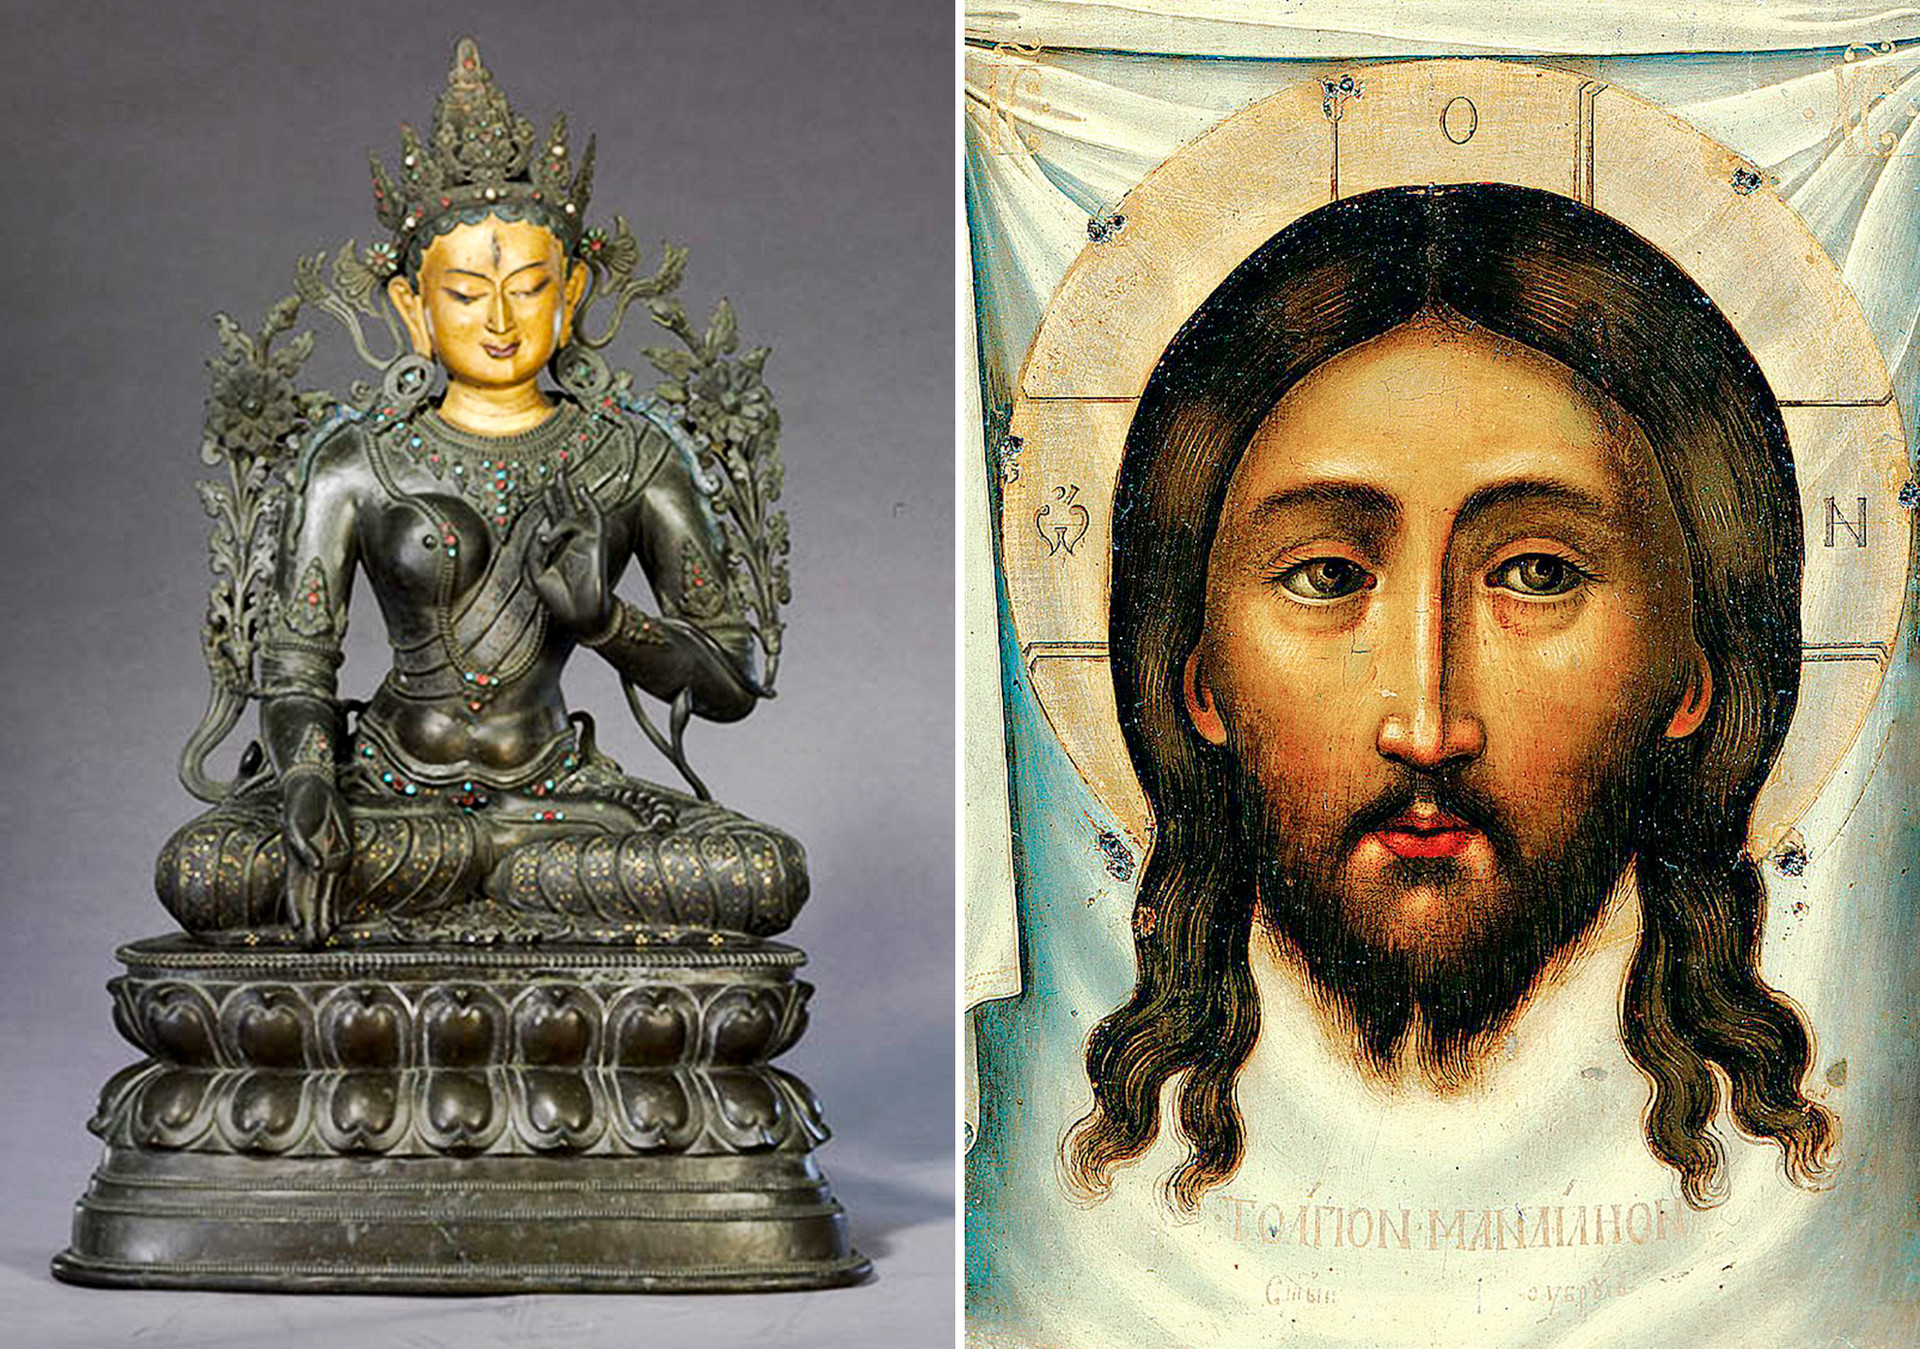 Слева: Статуя Белой Тары. Эпоха Цин, правление Цяньлун (1736–1796). Справа: Спас нерукотворный. Симон Ушаков. 1677